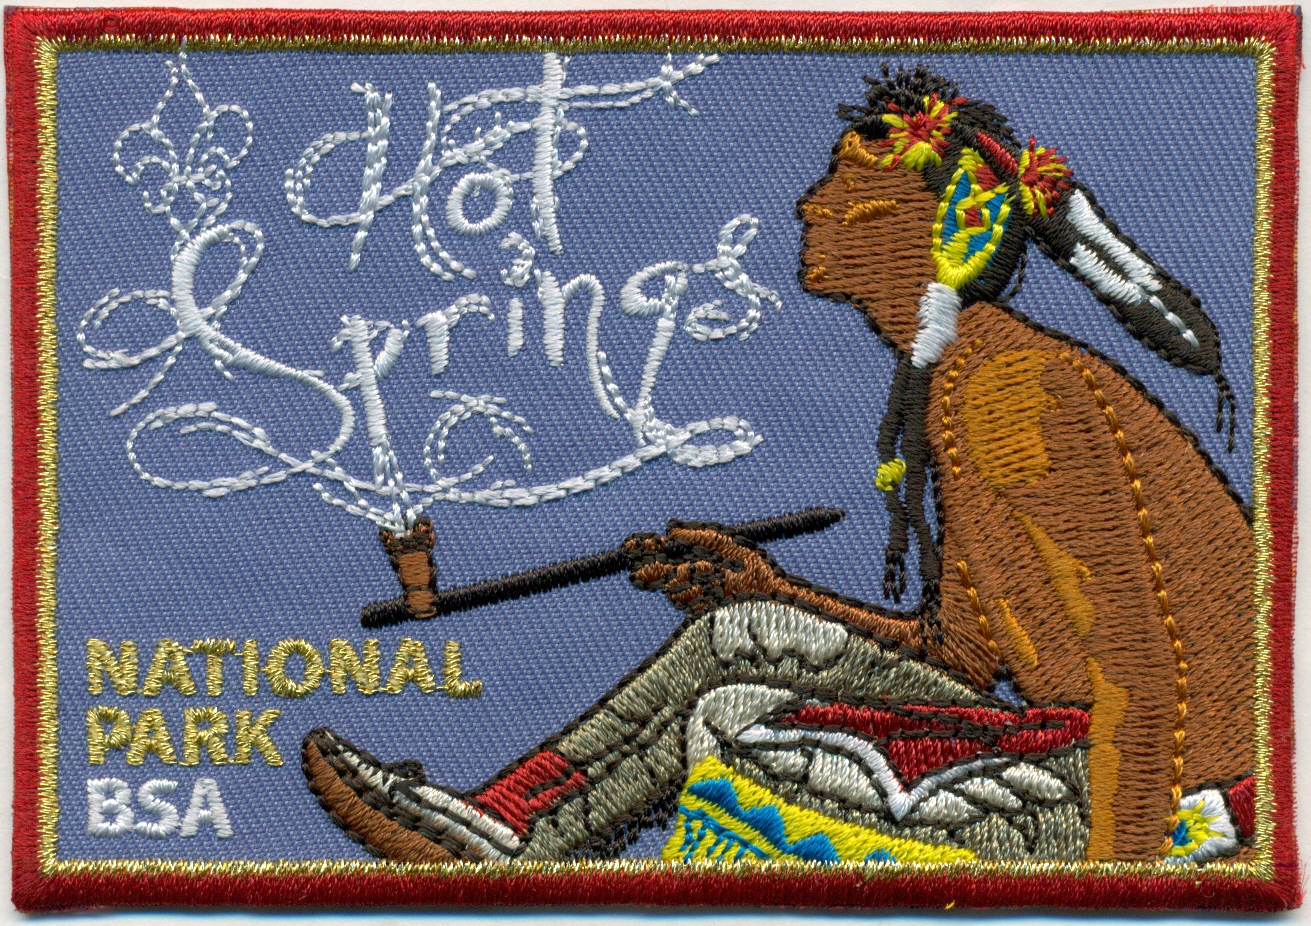 Hot Springs National Park emblem image